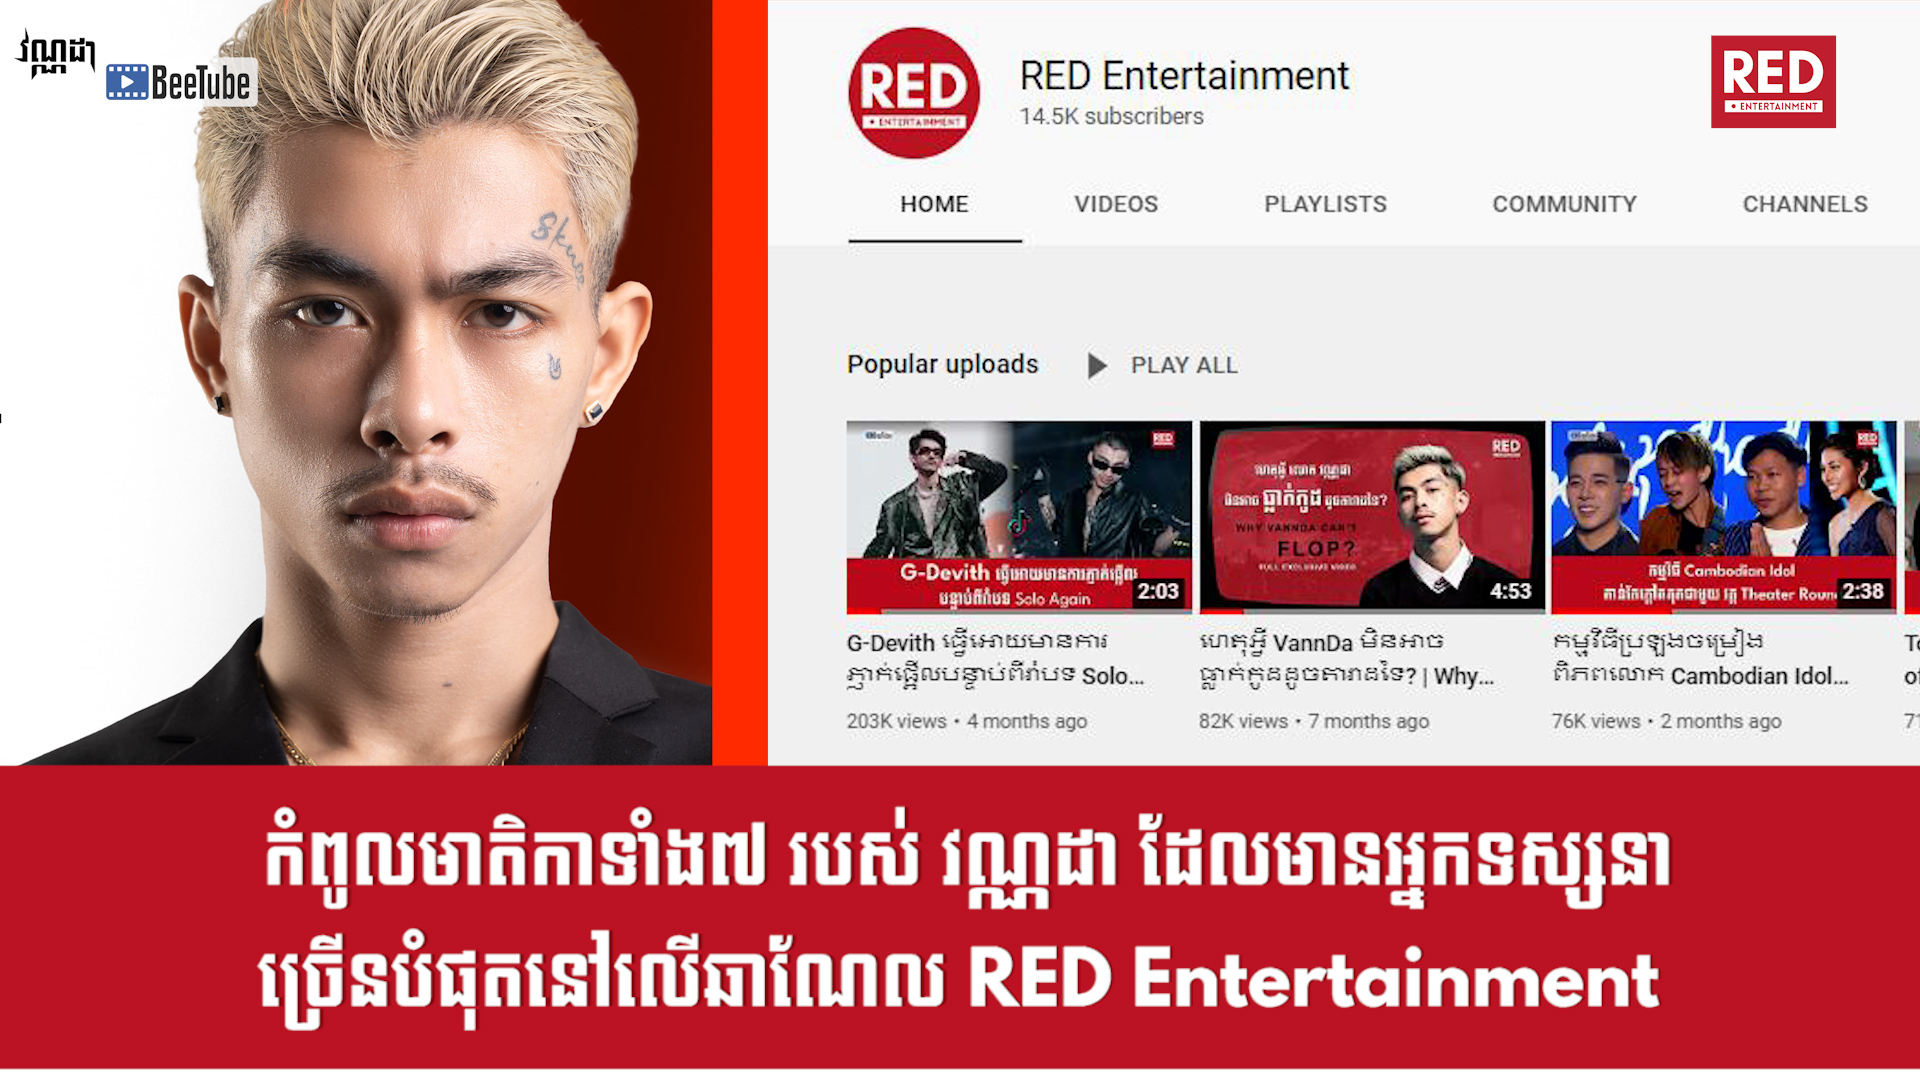 កំពូលមាតិកាទាំង៧របស់ វណ្ណដា ដែលមានអ្នកទស្សនាច្រើនបំផុតនៅលើឆាណែល RED Entertainment 